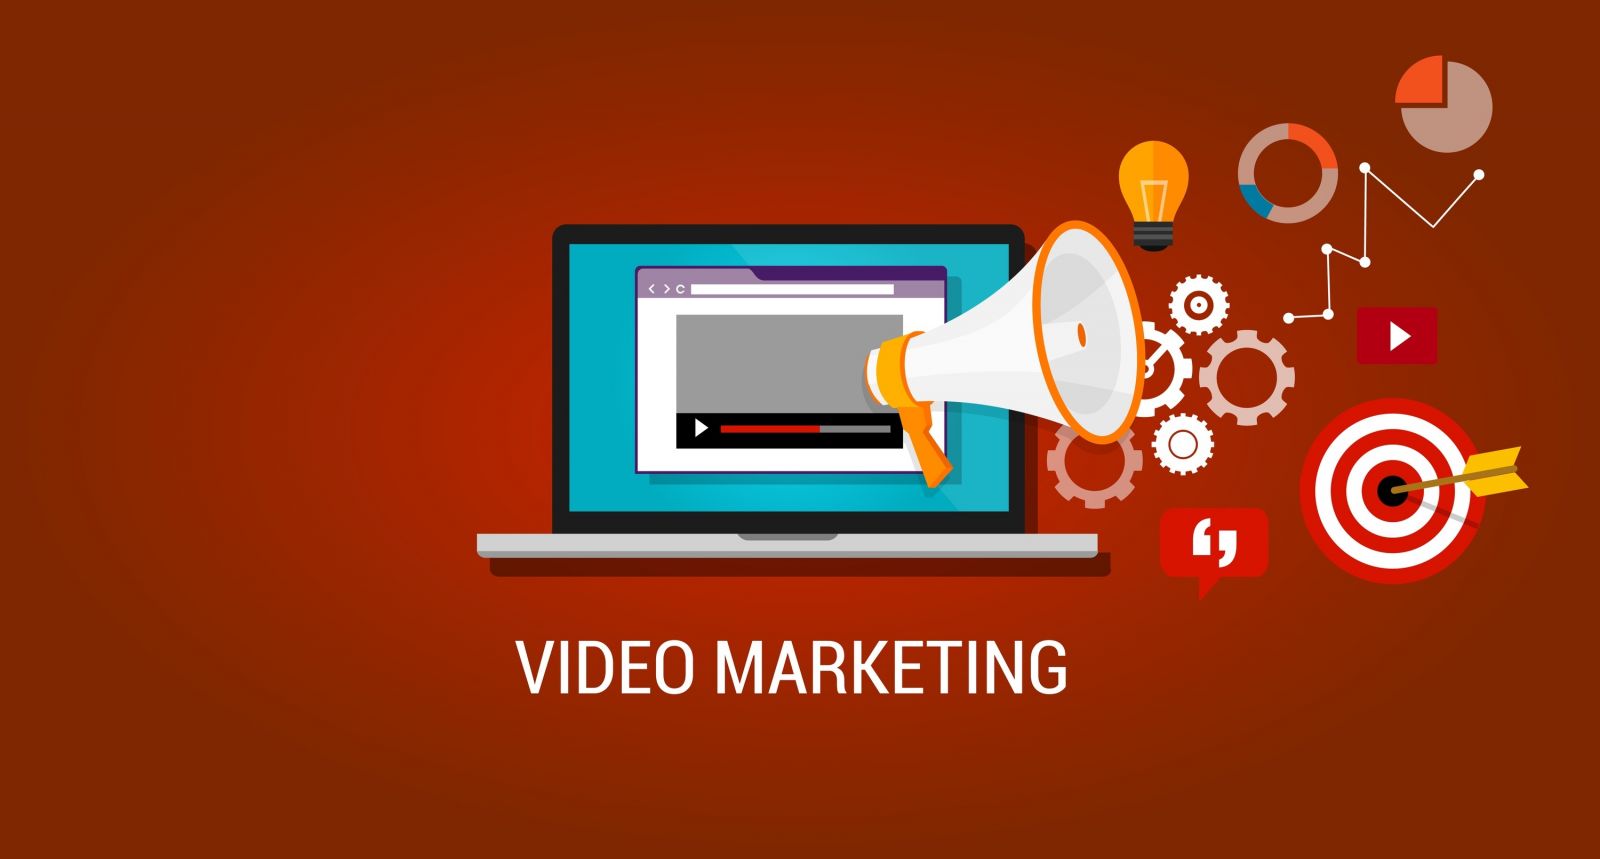 Video marketing - Xu hướng quảng cáo không thể bỏ qua